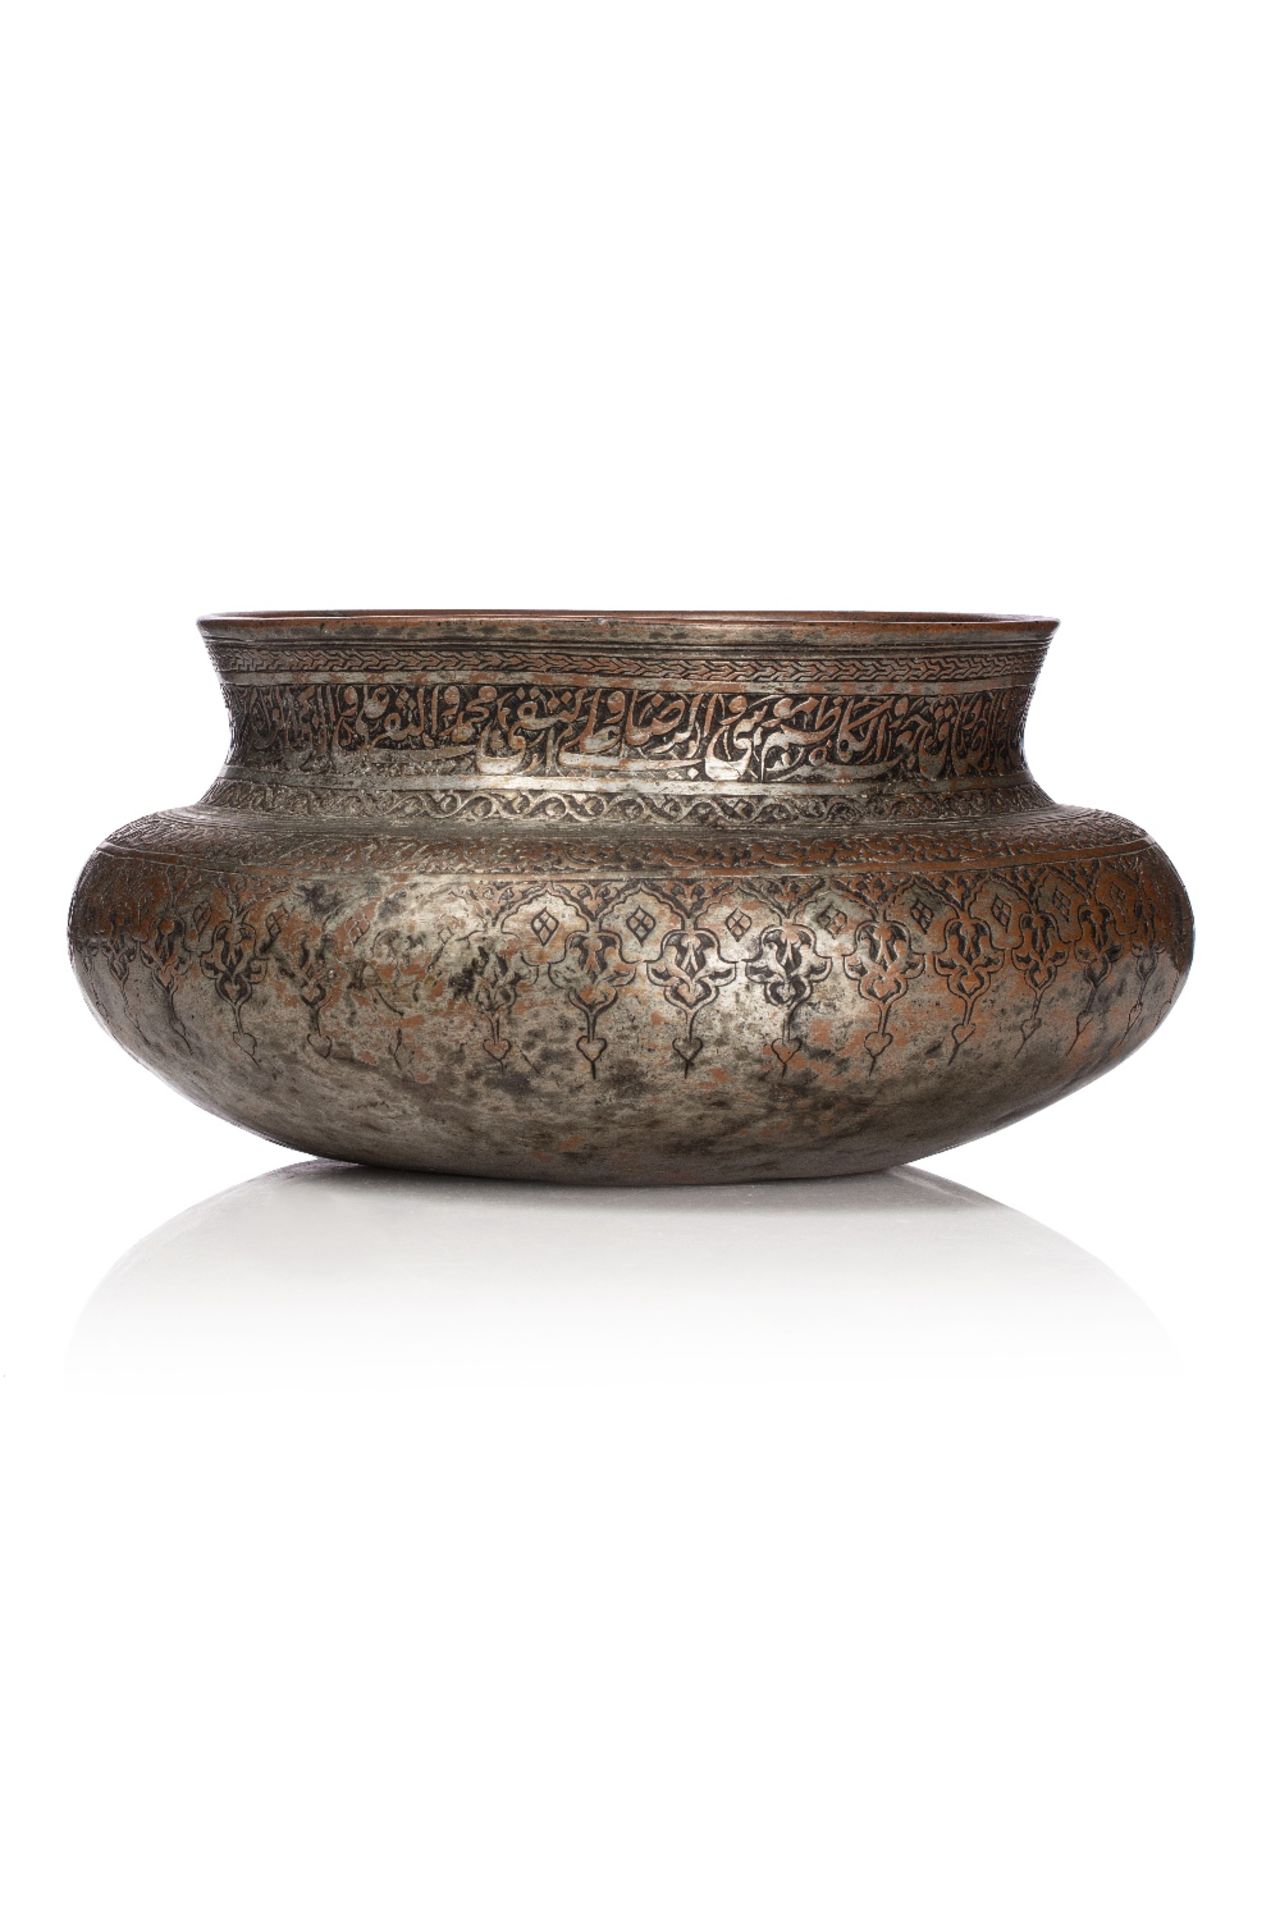 Tas du DeccanInde, XVIIe-XVIIIe siècleBassin à panse bombée et col cintré, en cuivre étamé, à